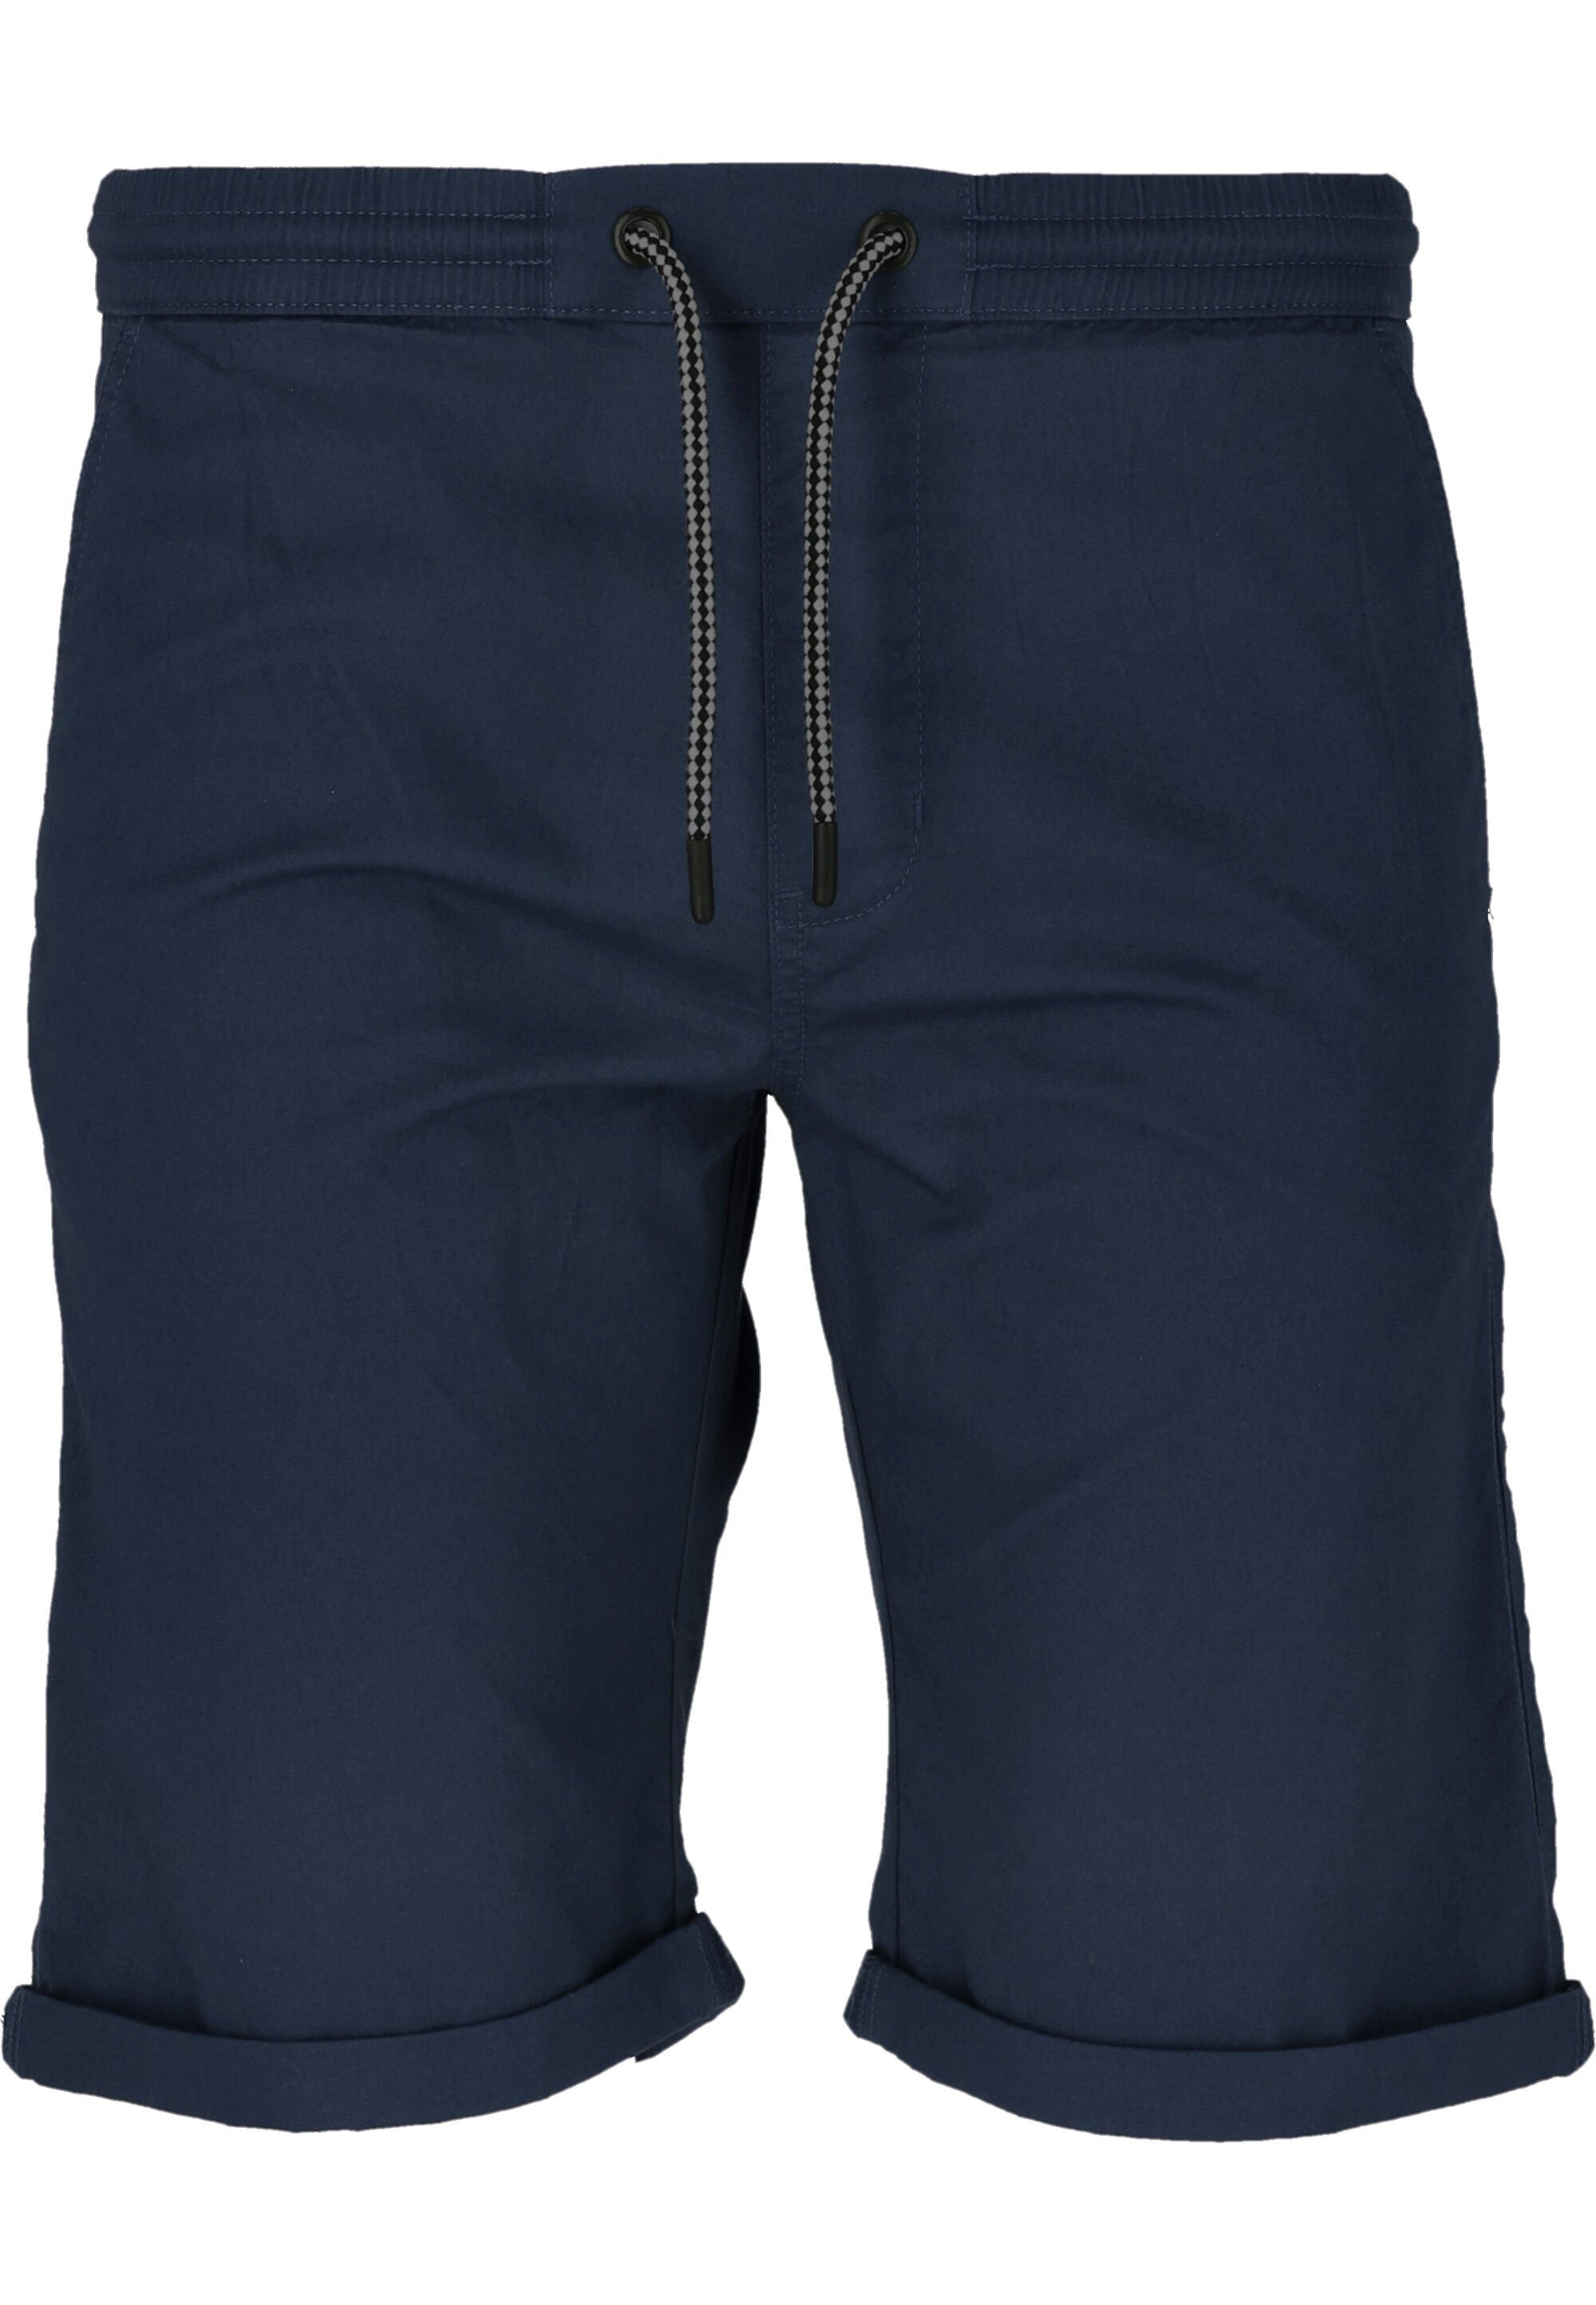 CRUZ Shorts Gilchrest mit Seitentaschen dunkelblau praktischen